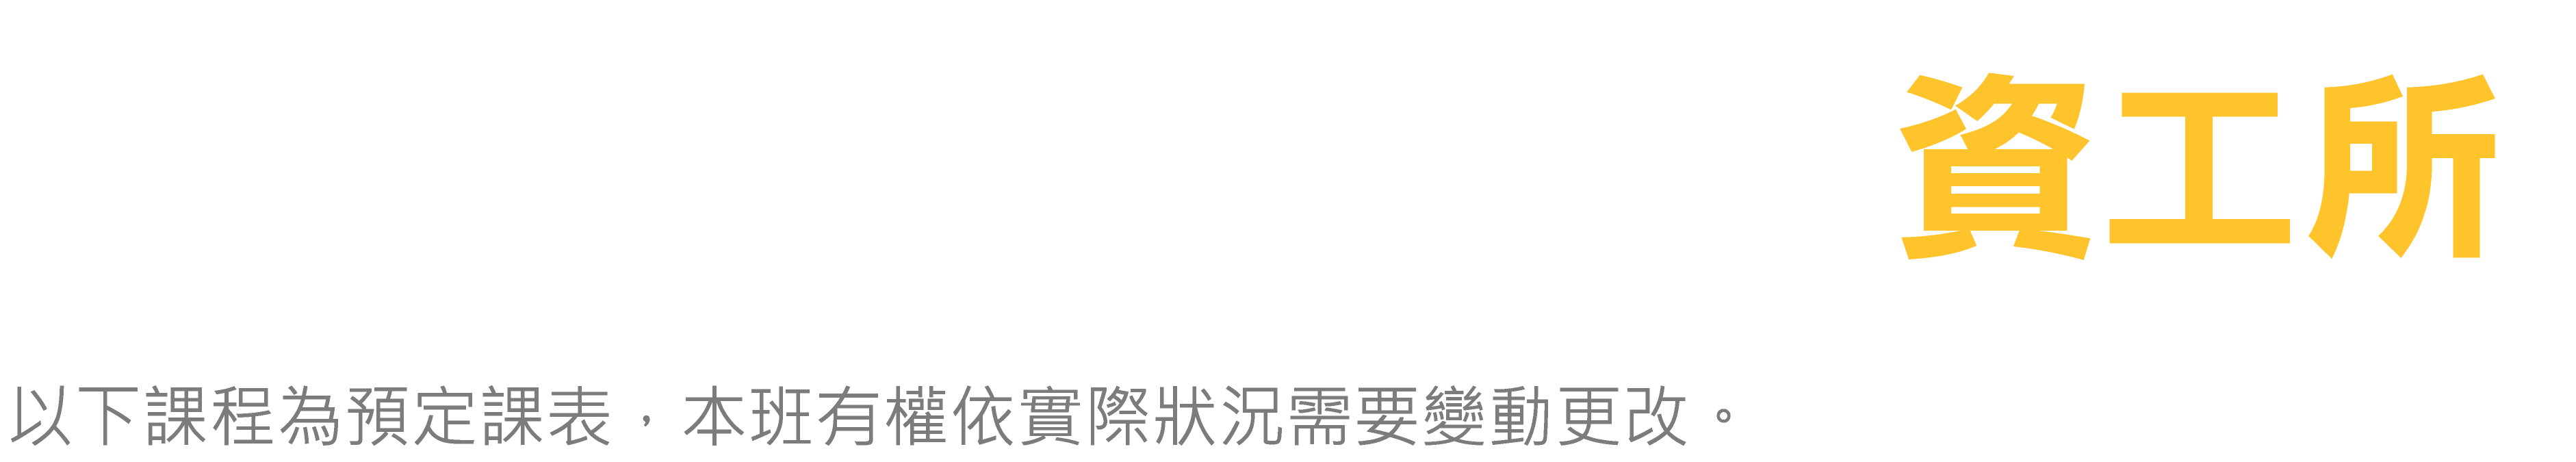 台北偉文 資工所 春暑班課表